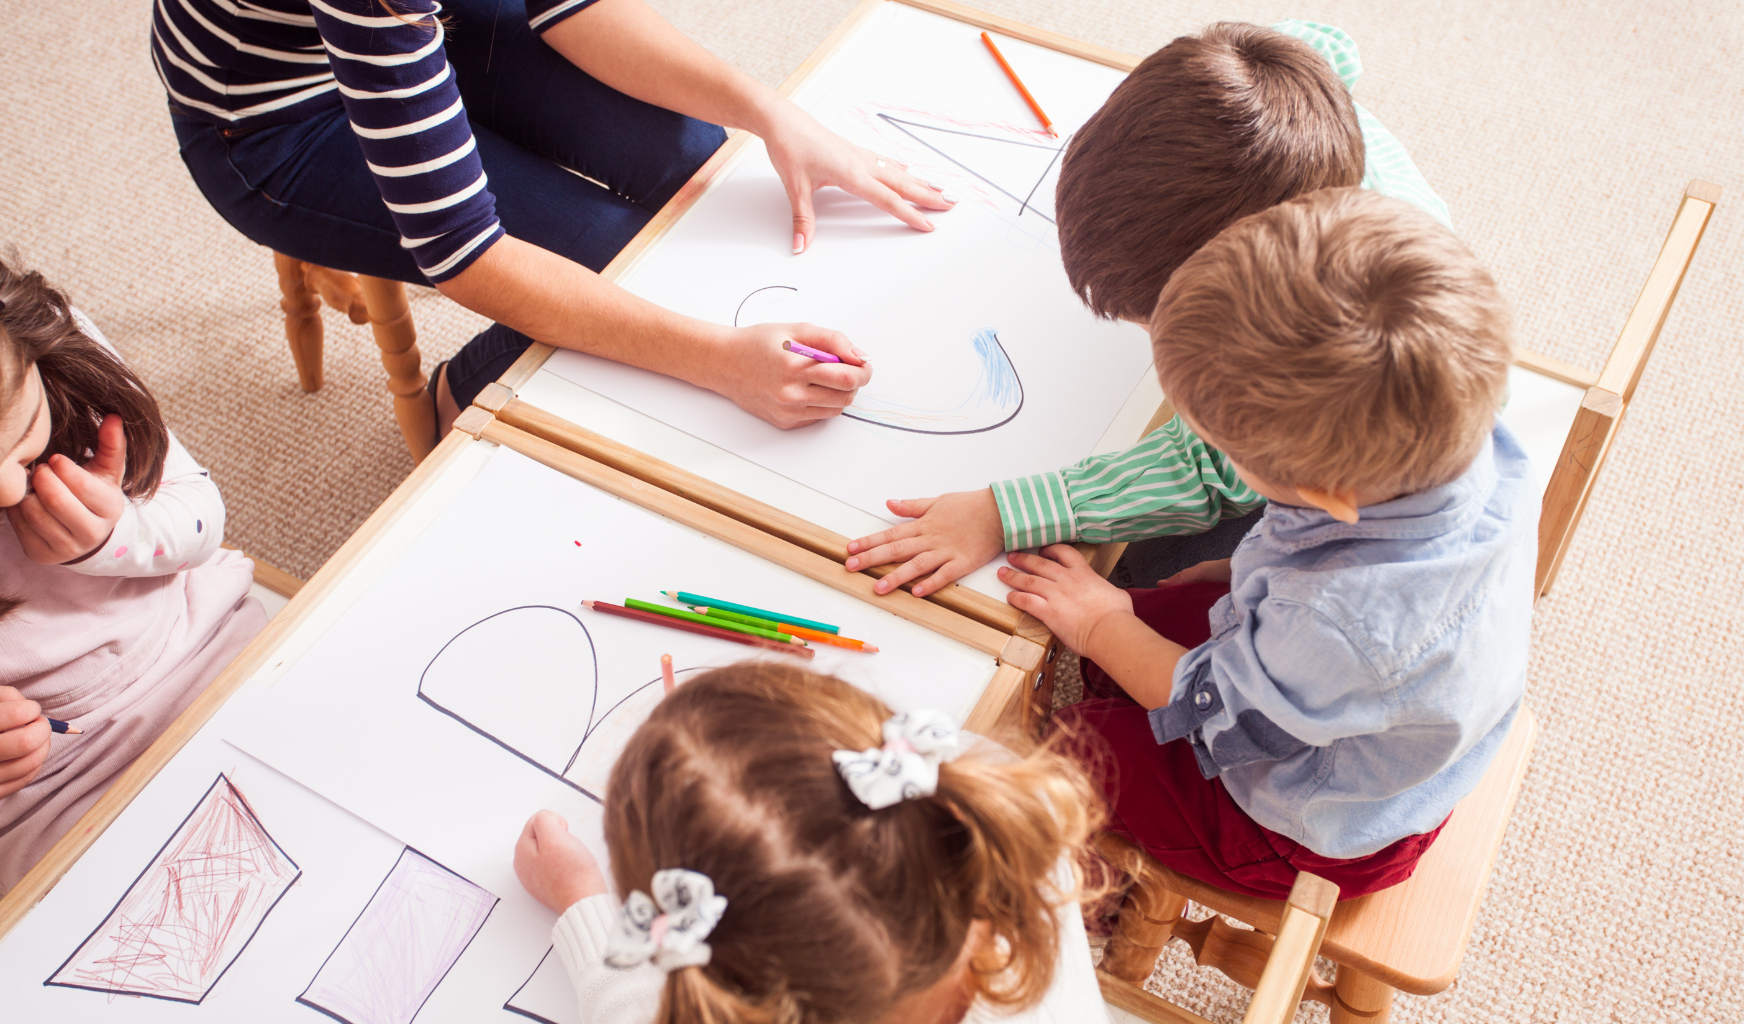 Das Foto zeigt drei Kinder in einer Kita beim Zeichnen.